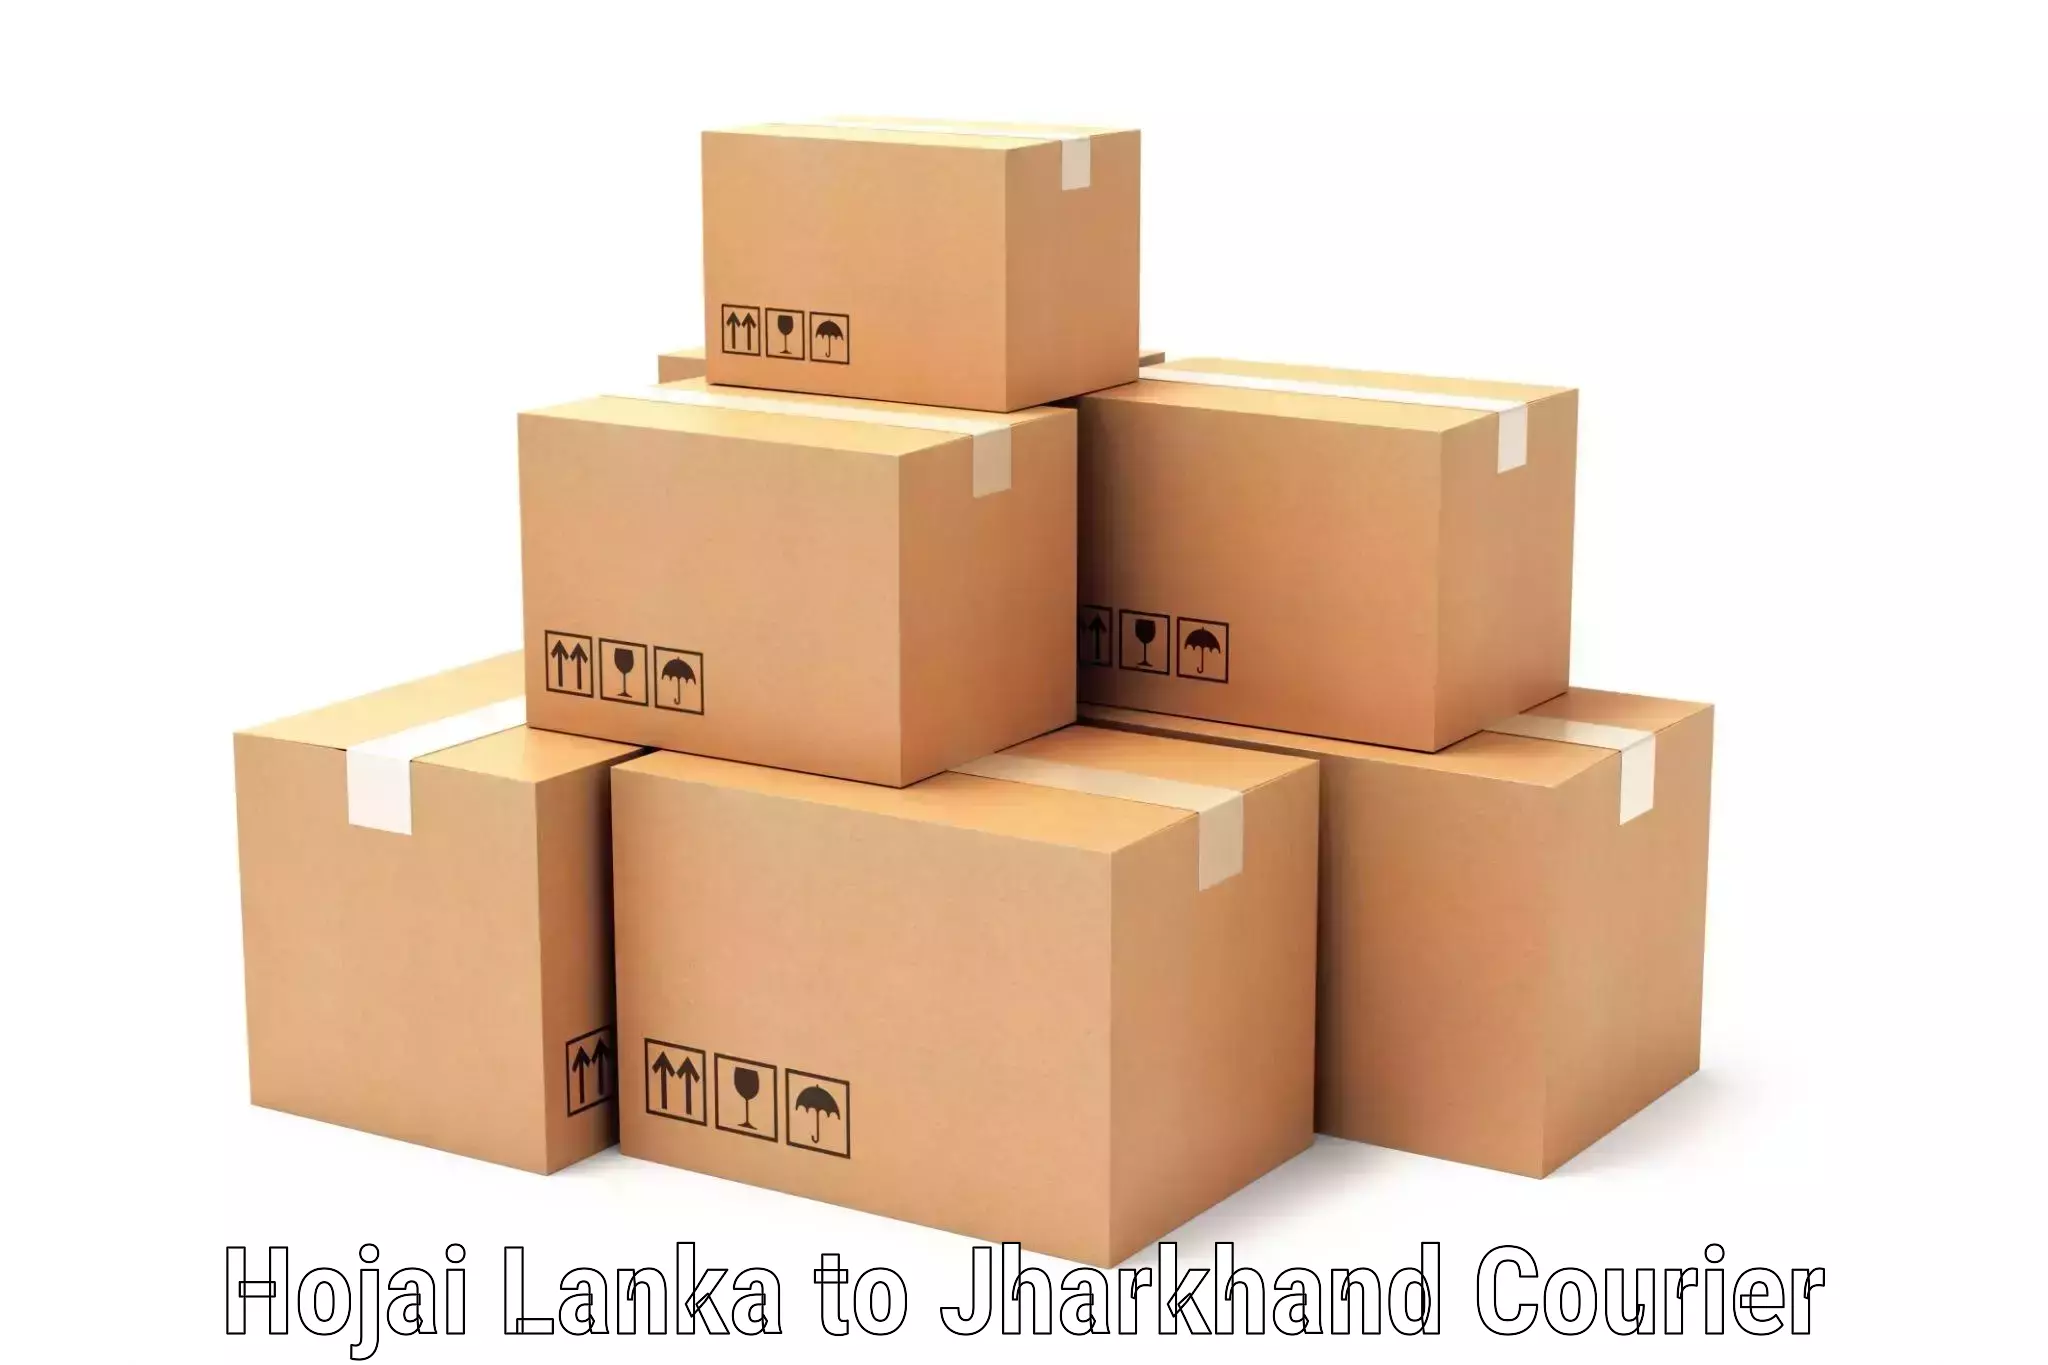 Door-to-door shipment Hojai Lanka to Jharkhand